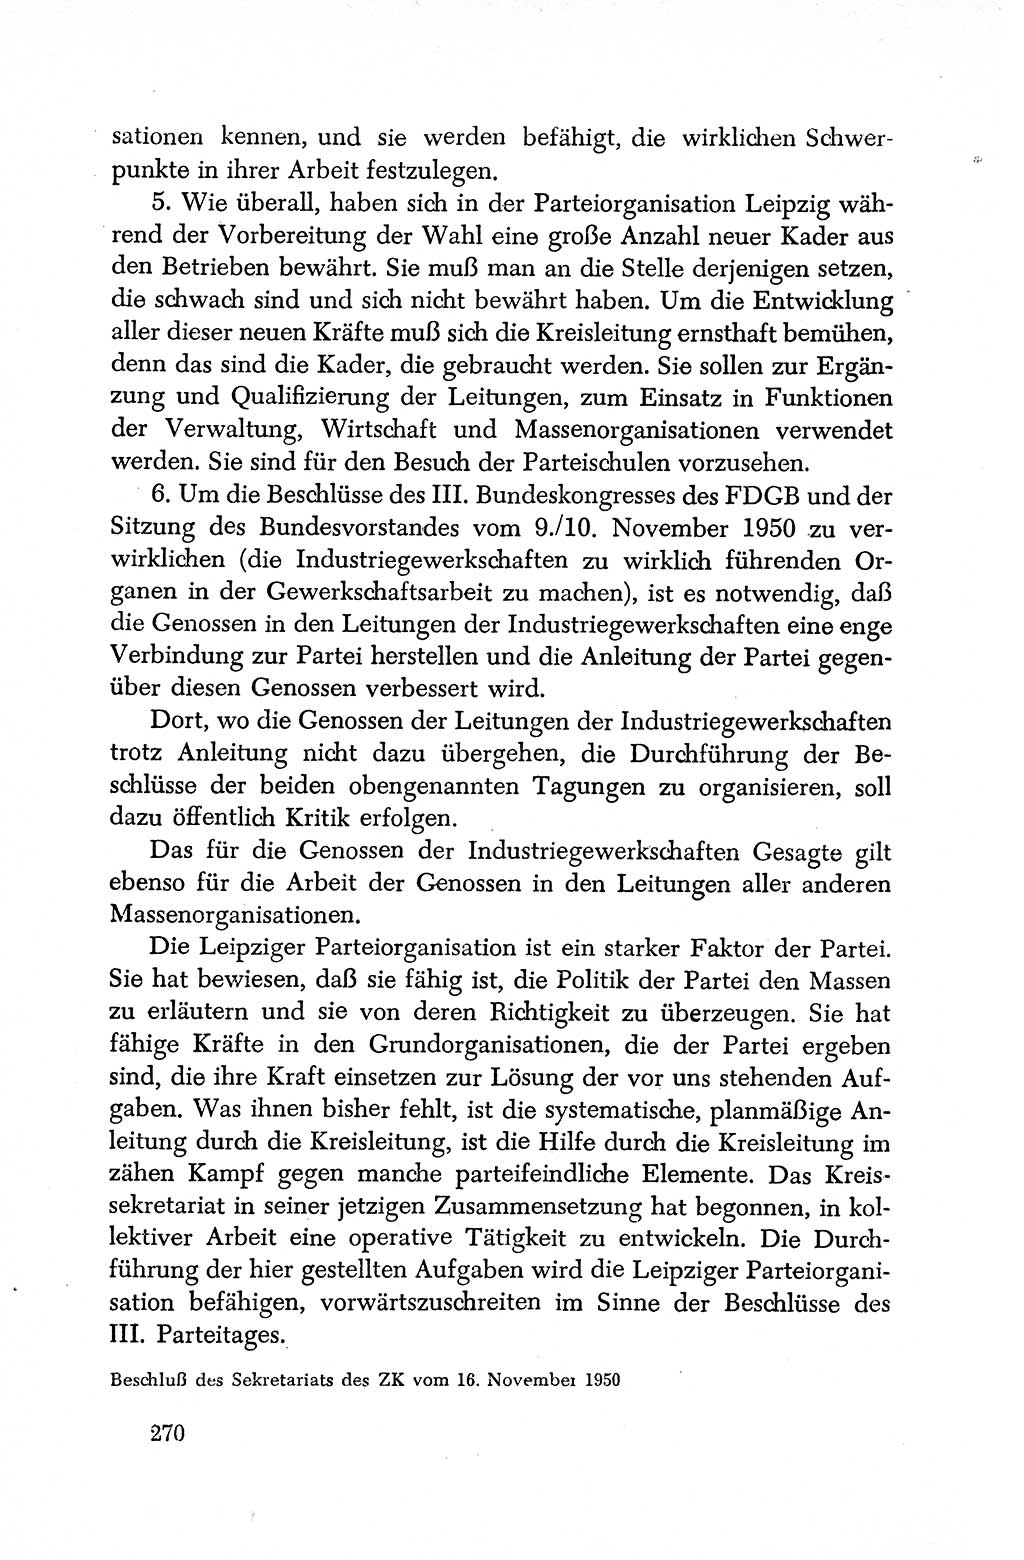 Dokumente der Sozialistischen Einheitspartei Deutschlands (SED) [Deutsche Demokratische Republik (DDR)] 1950-1952, Seite 270 (Dok. SED DDR 1950-1952, S. 270)